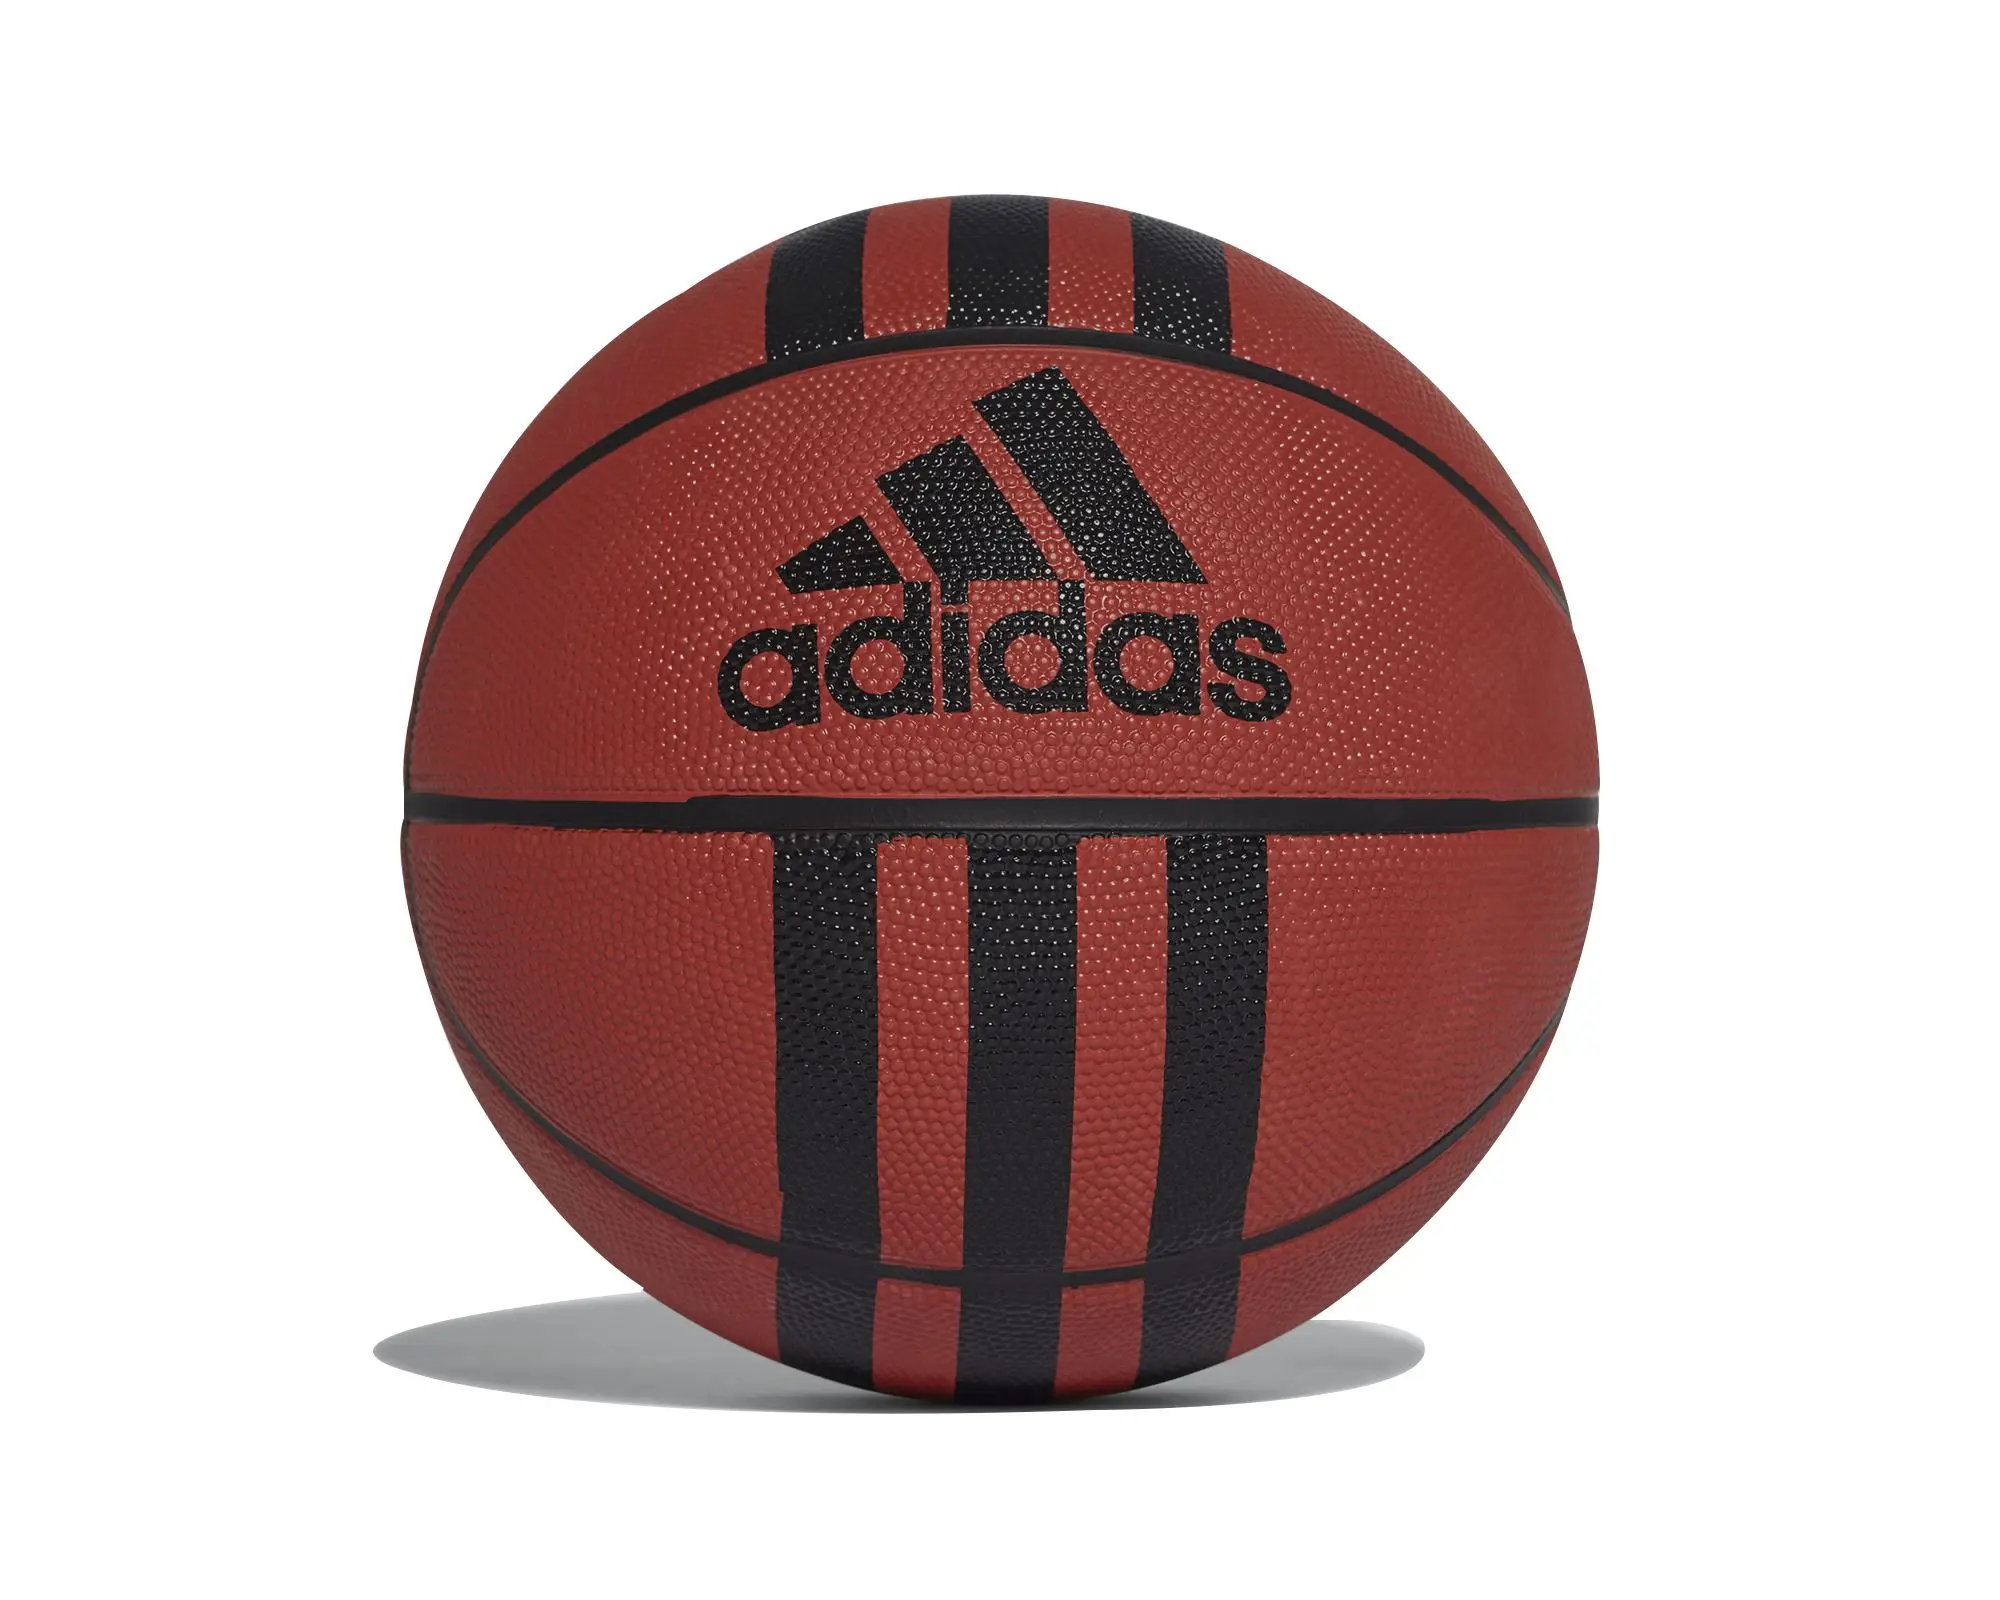 Adidas Original High Quality Basketball Ball 3 Stripe D 29.5 Outdoor Indoor Match Training Men Women Basketball 218977